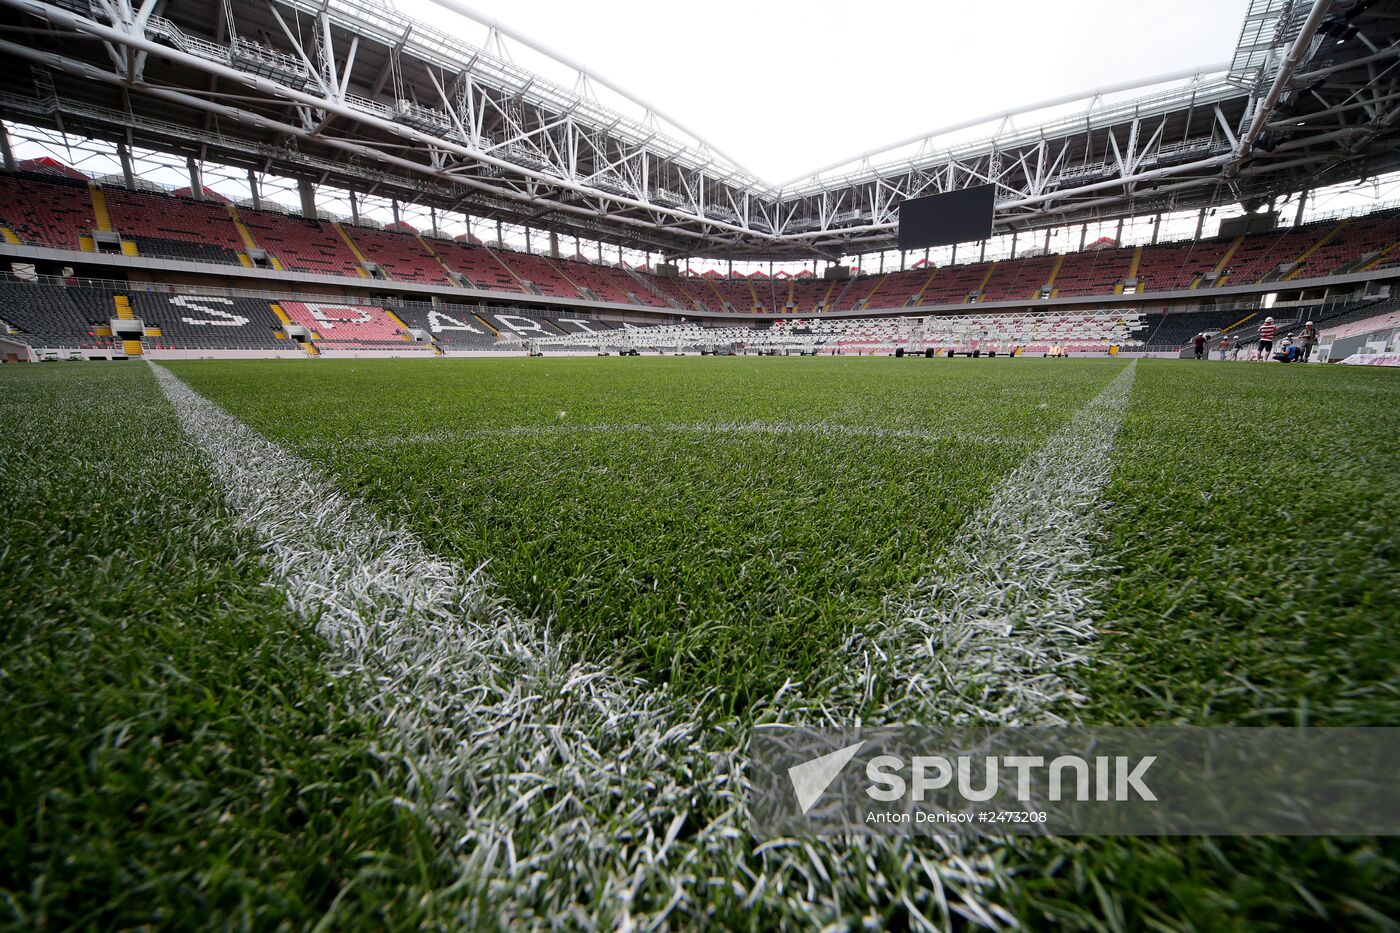 Construction of Spartak stadium "Otkrytiye-Arena"